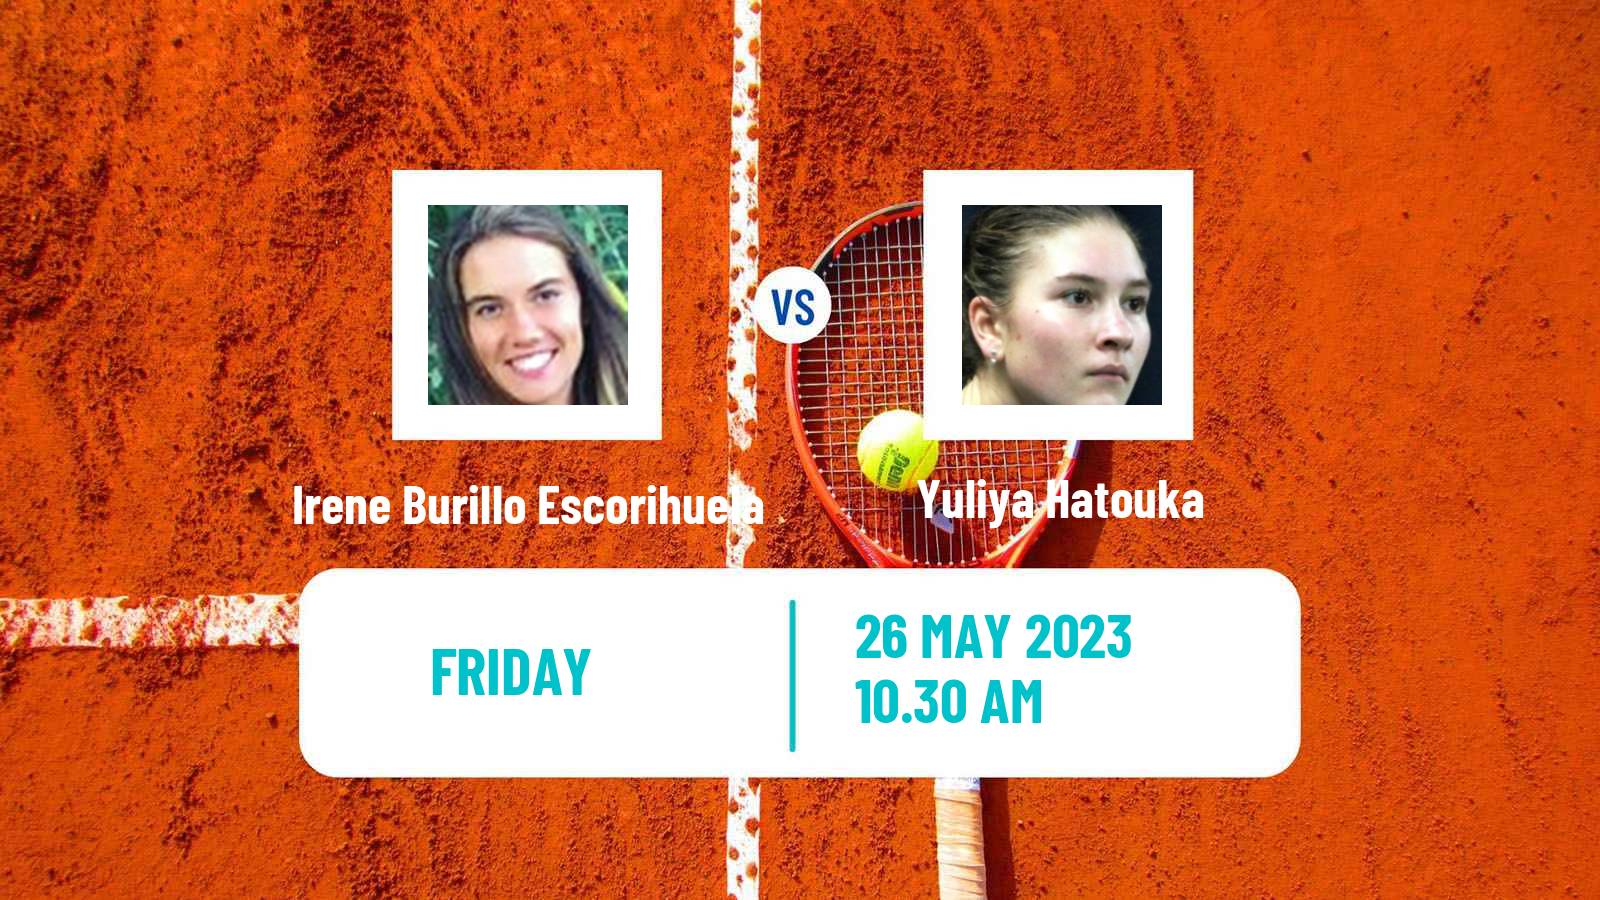 Tennis ITF W60 Grado Women Irene Burillo Escorihuela - Yuliya Hatouka